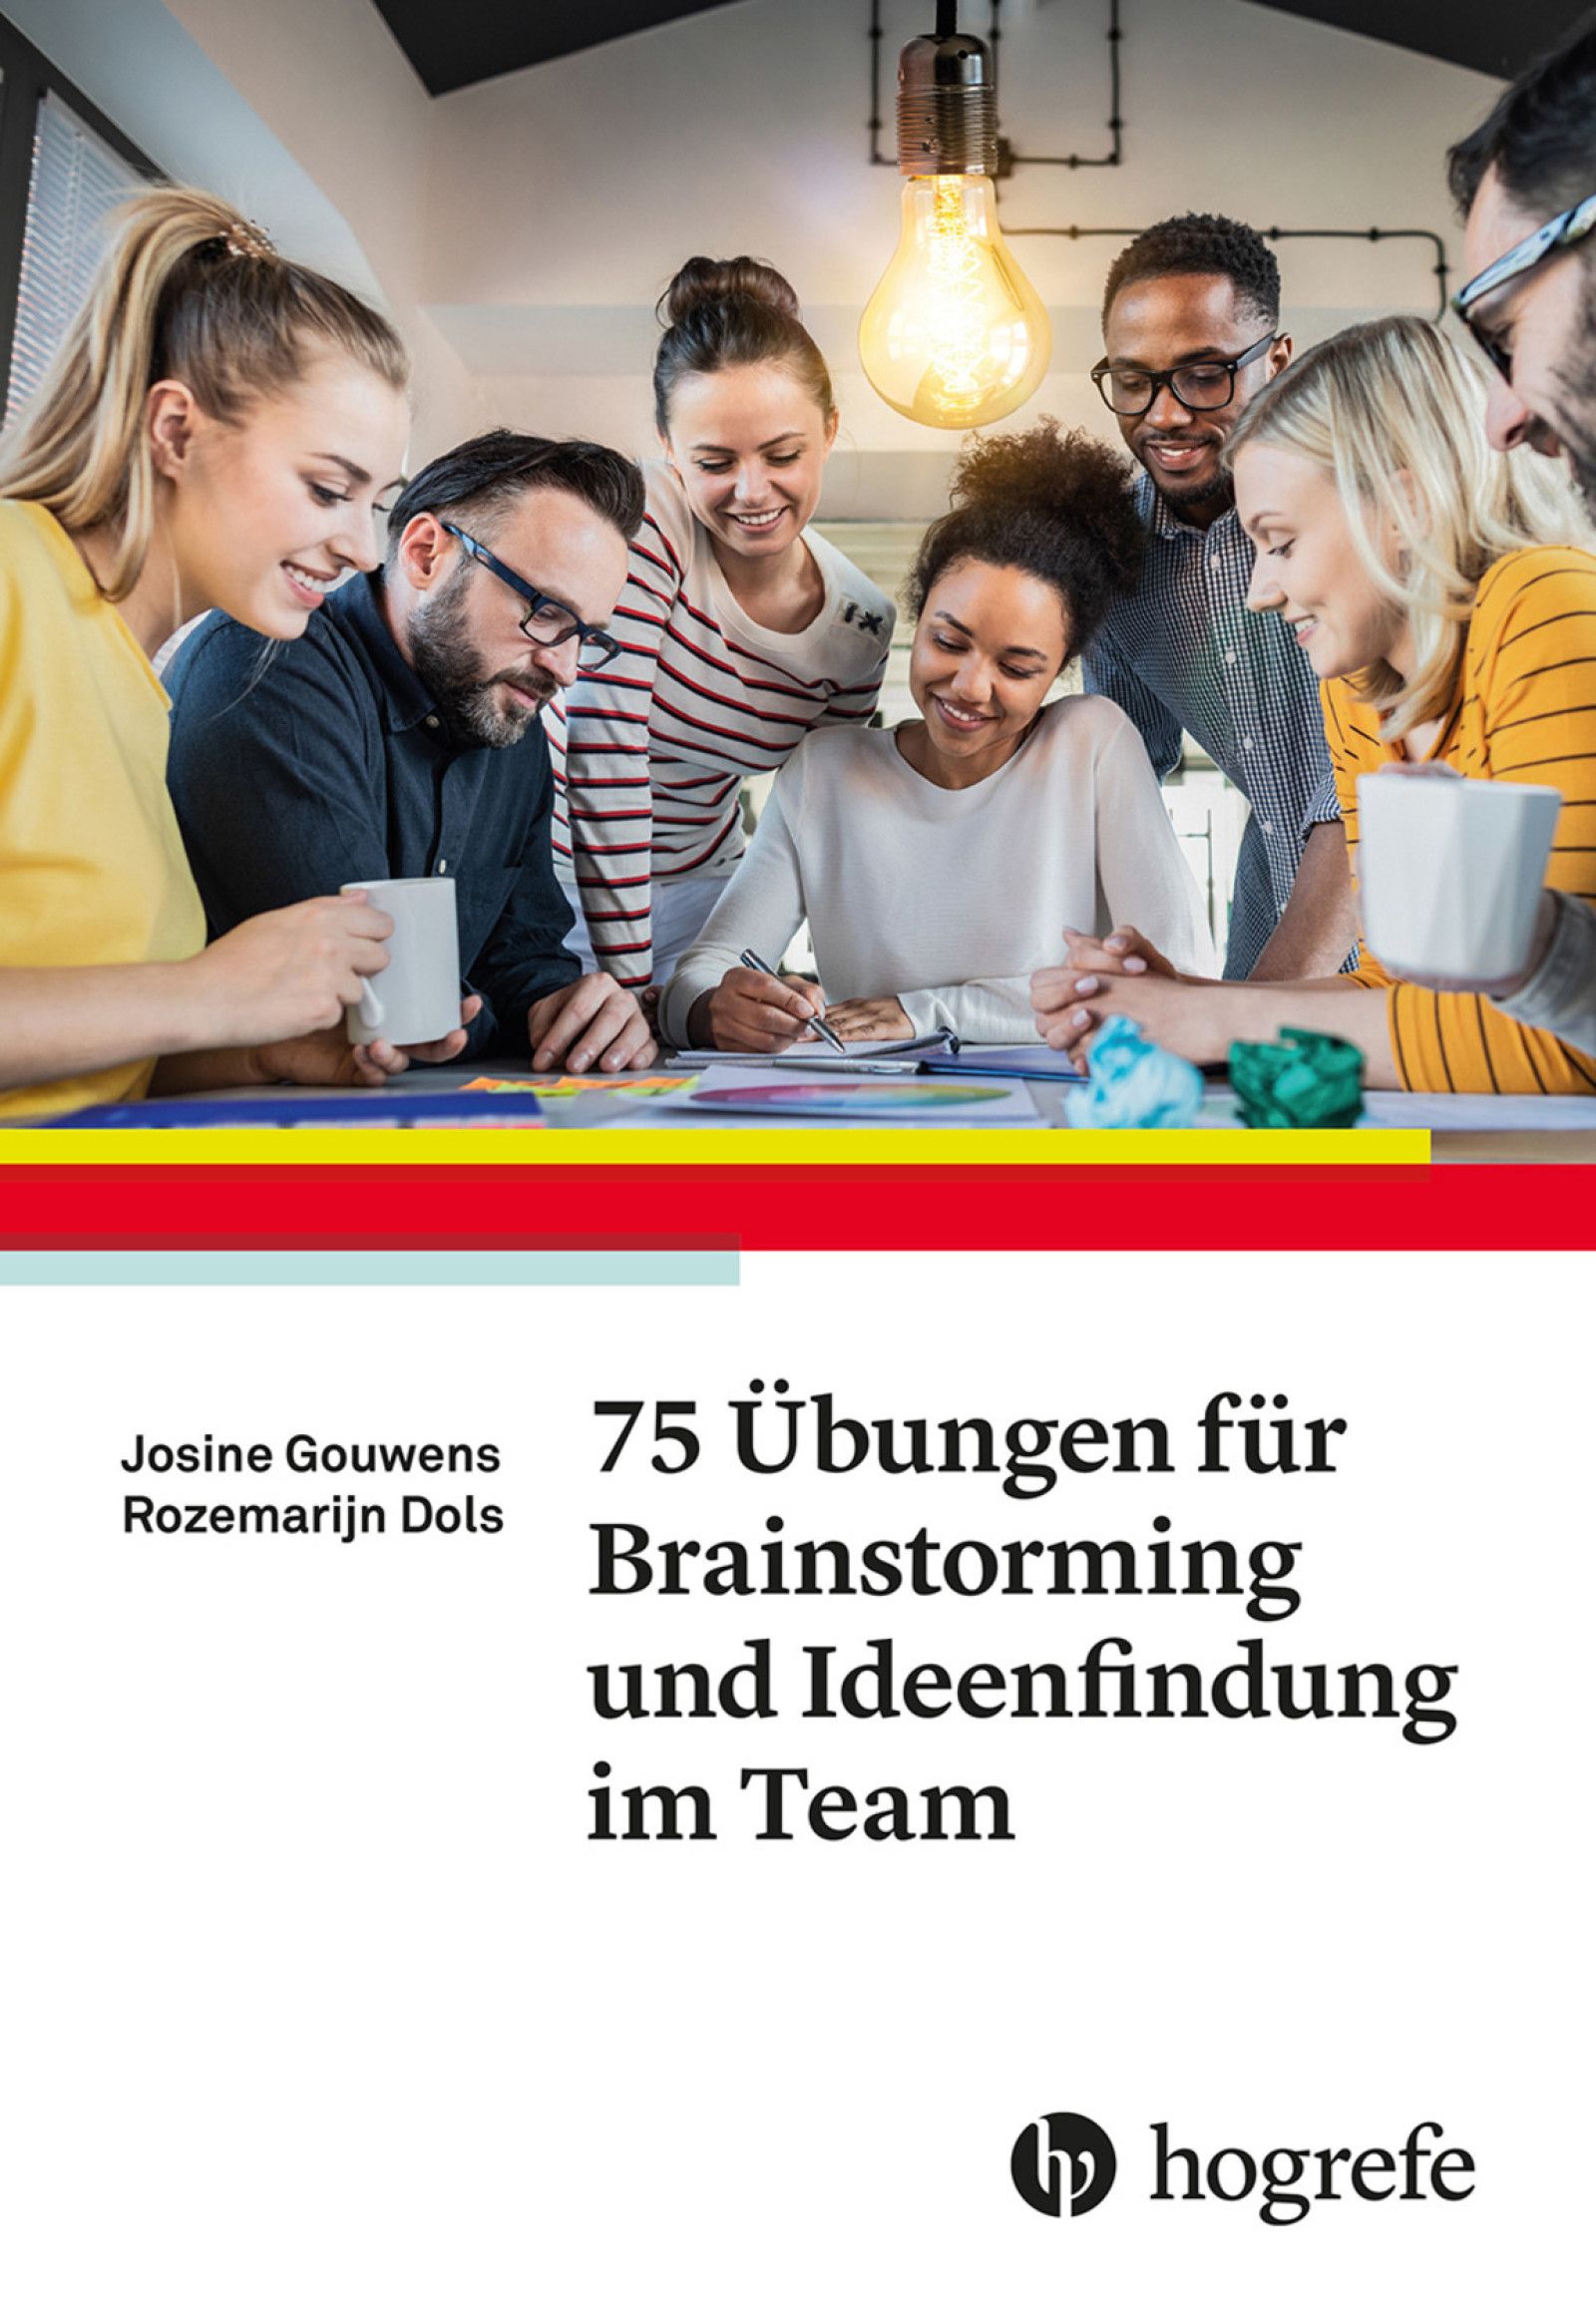 Ein Team arbeitet kreativ an einer Lösung - darunter der Titel "75-Übungen für Brainstorming und Ideenfindung im Team"